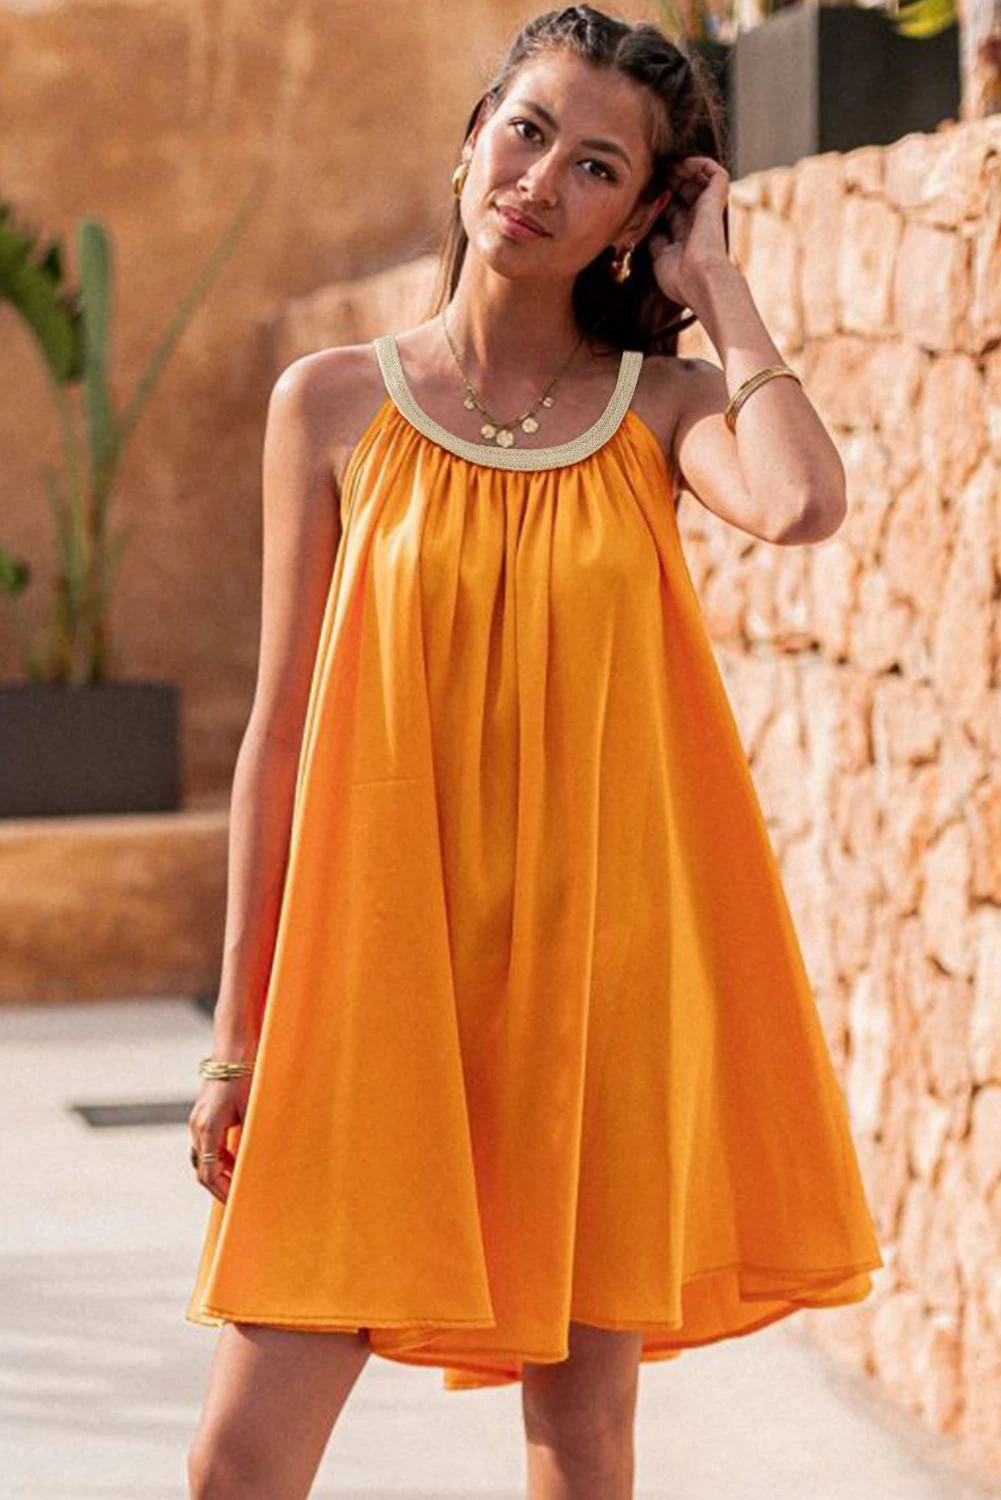 活力橙色波西米亚风梭织领口无袖娃娃装连衣裙 LC6119028